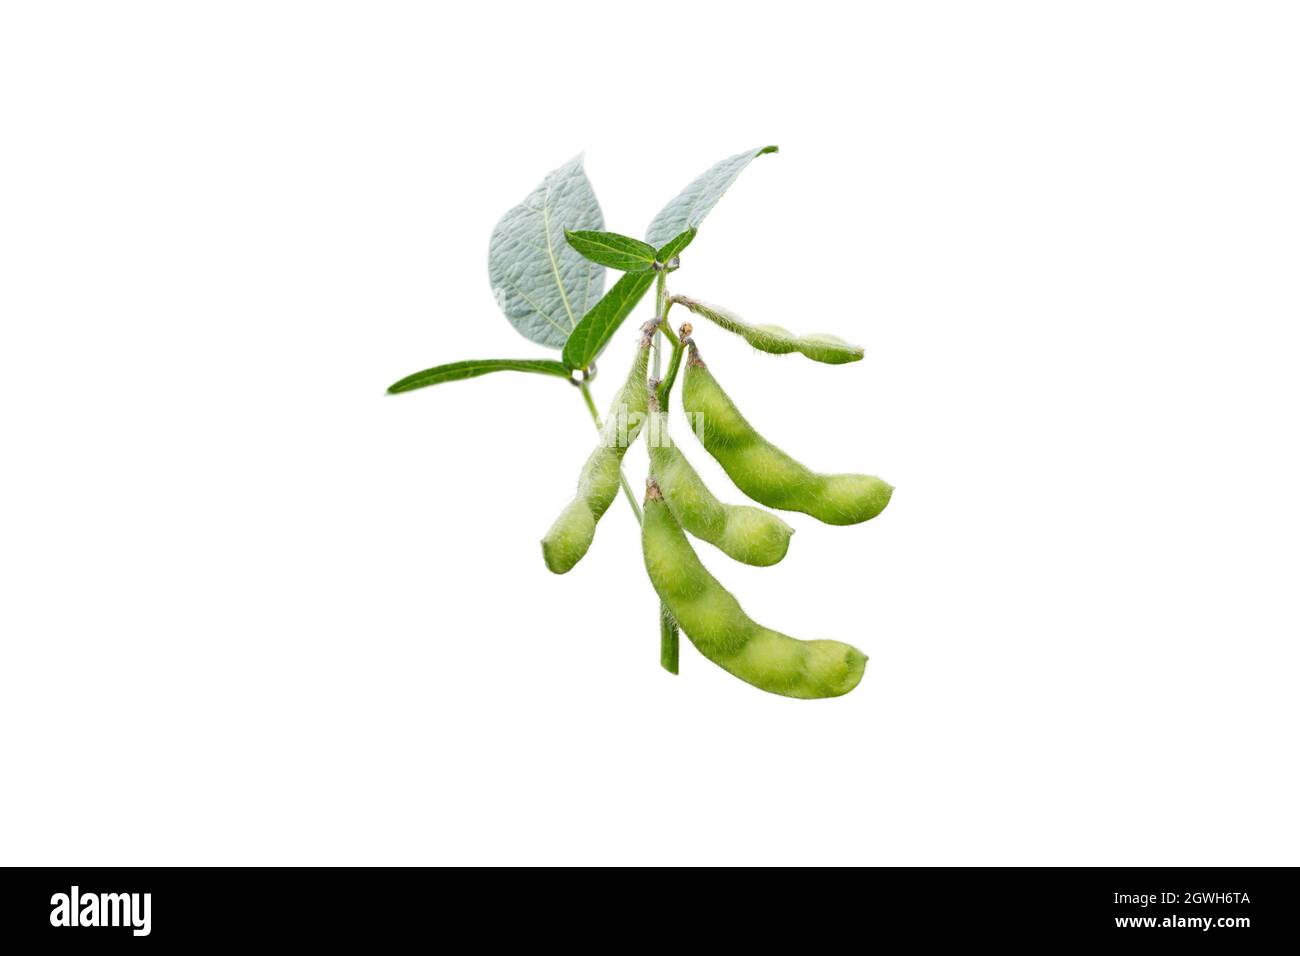 Branche de soja ou de soja isolée sur blanc. Plante glycine max avec haricots et feuilles. Banque D'Images